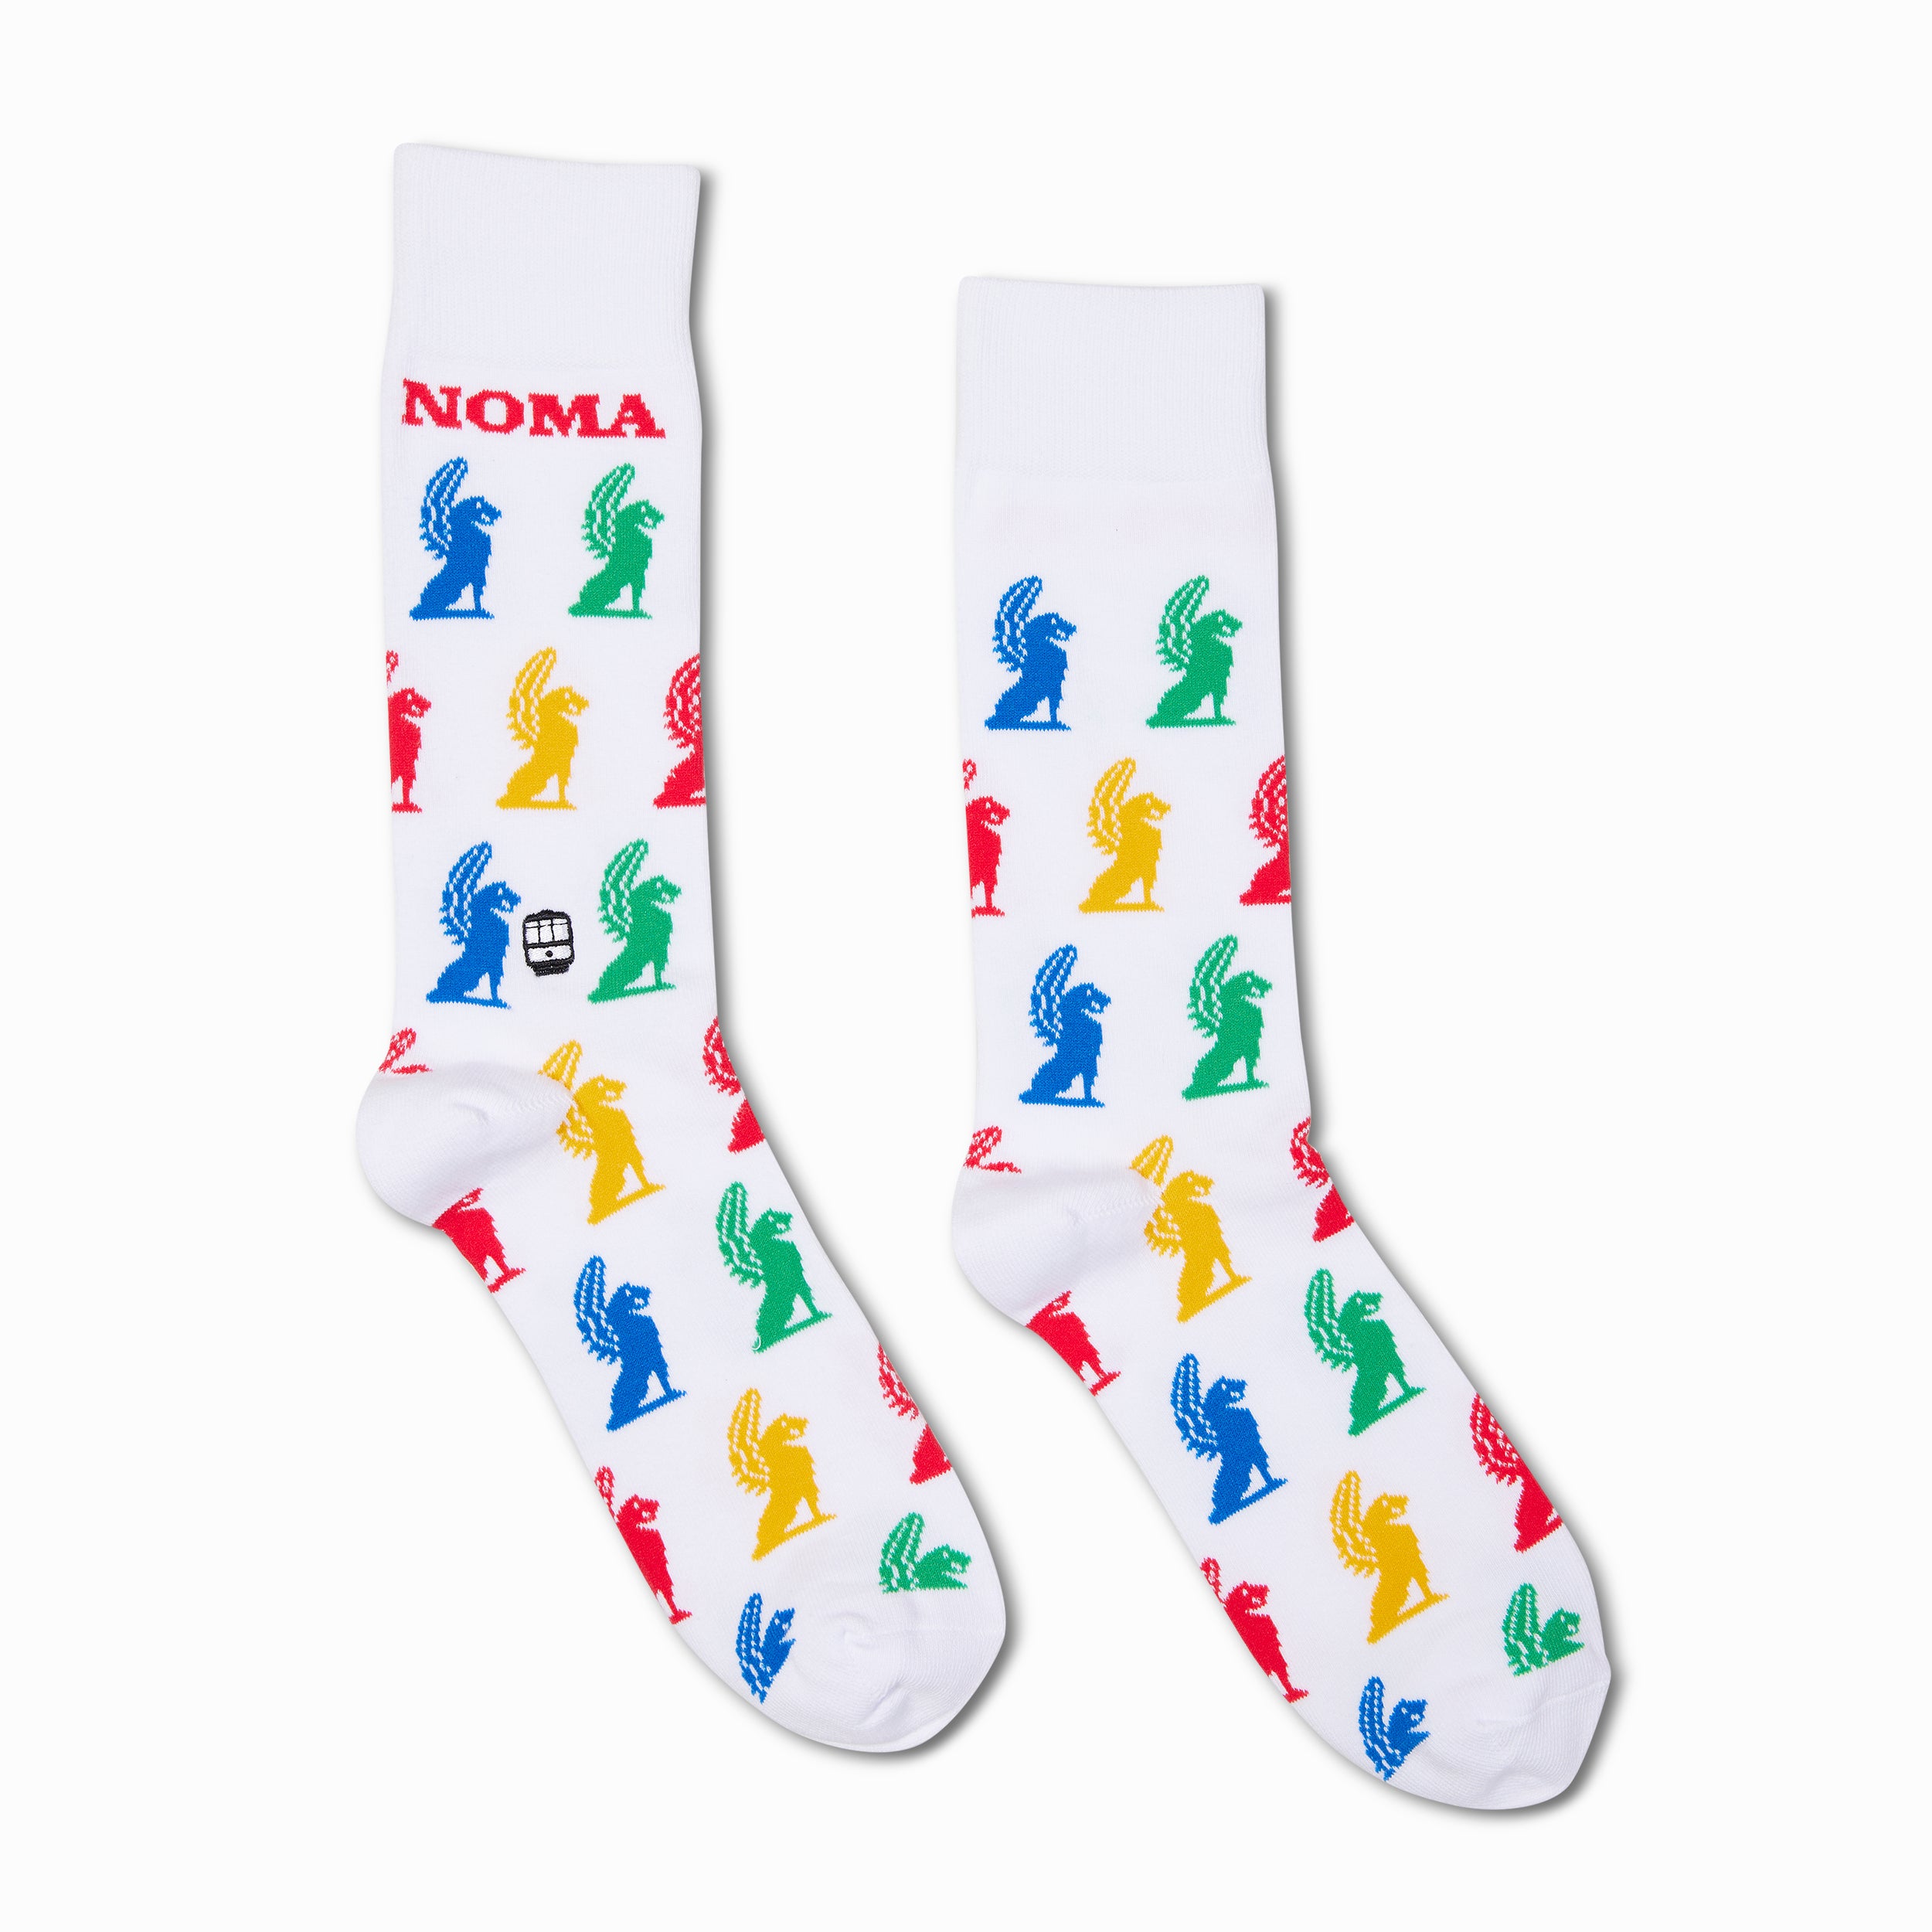 NOMA Socks